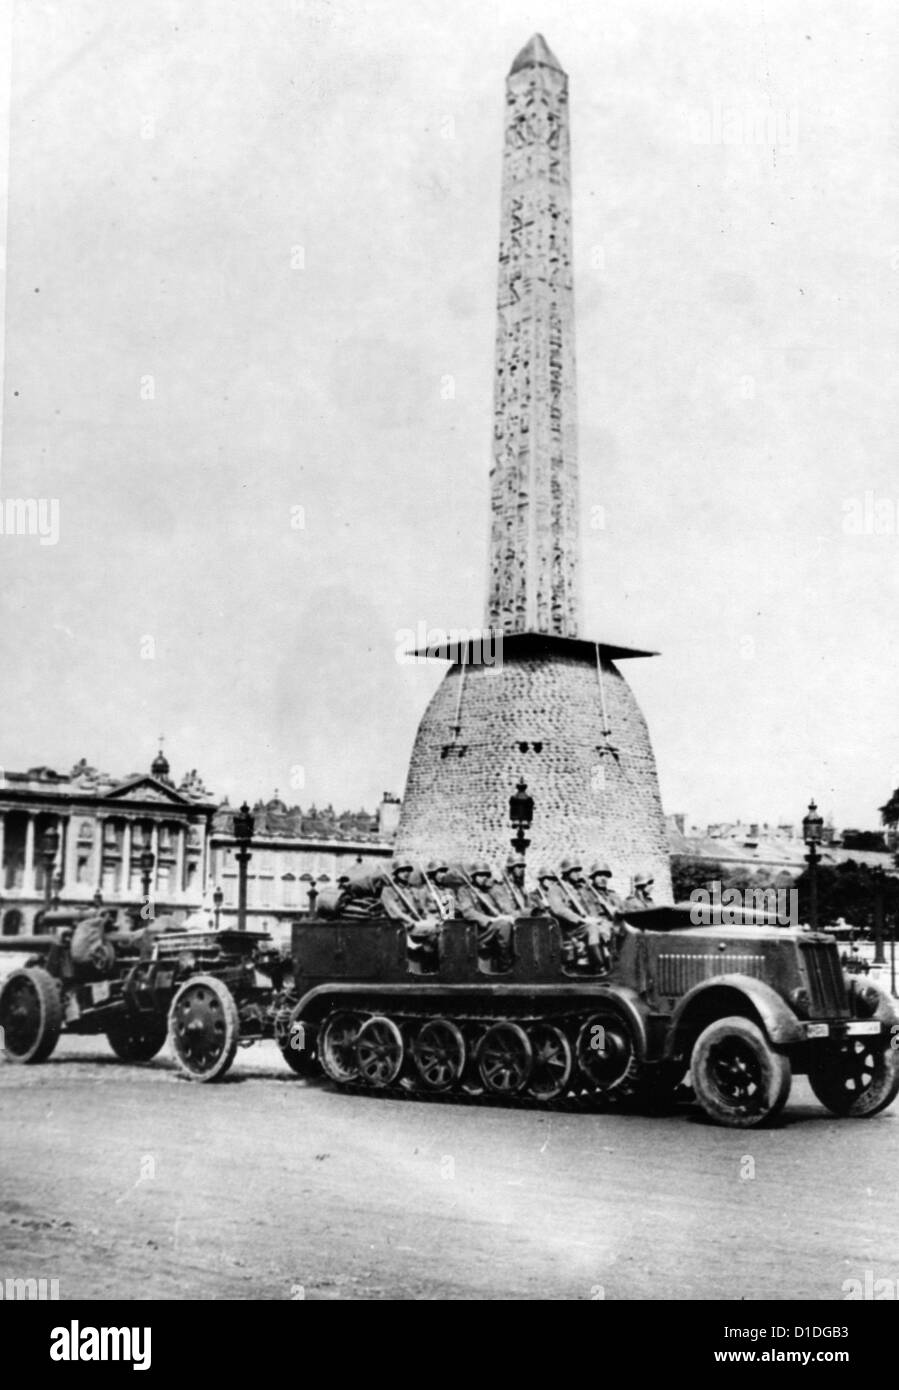 Le truppe tedesche sono raffigurate di fronte all'Obelisco di Luxor in Place de la Concorde durante l'invasione tedesca di Parigi nel giugno 1940. Fotoarchiv für Zeitgeschichte Foto Stock